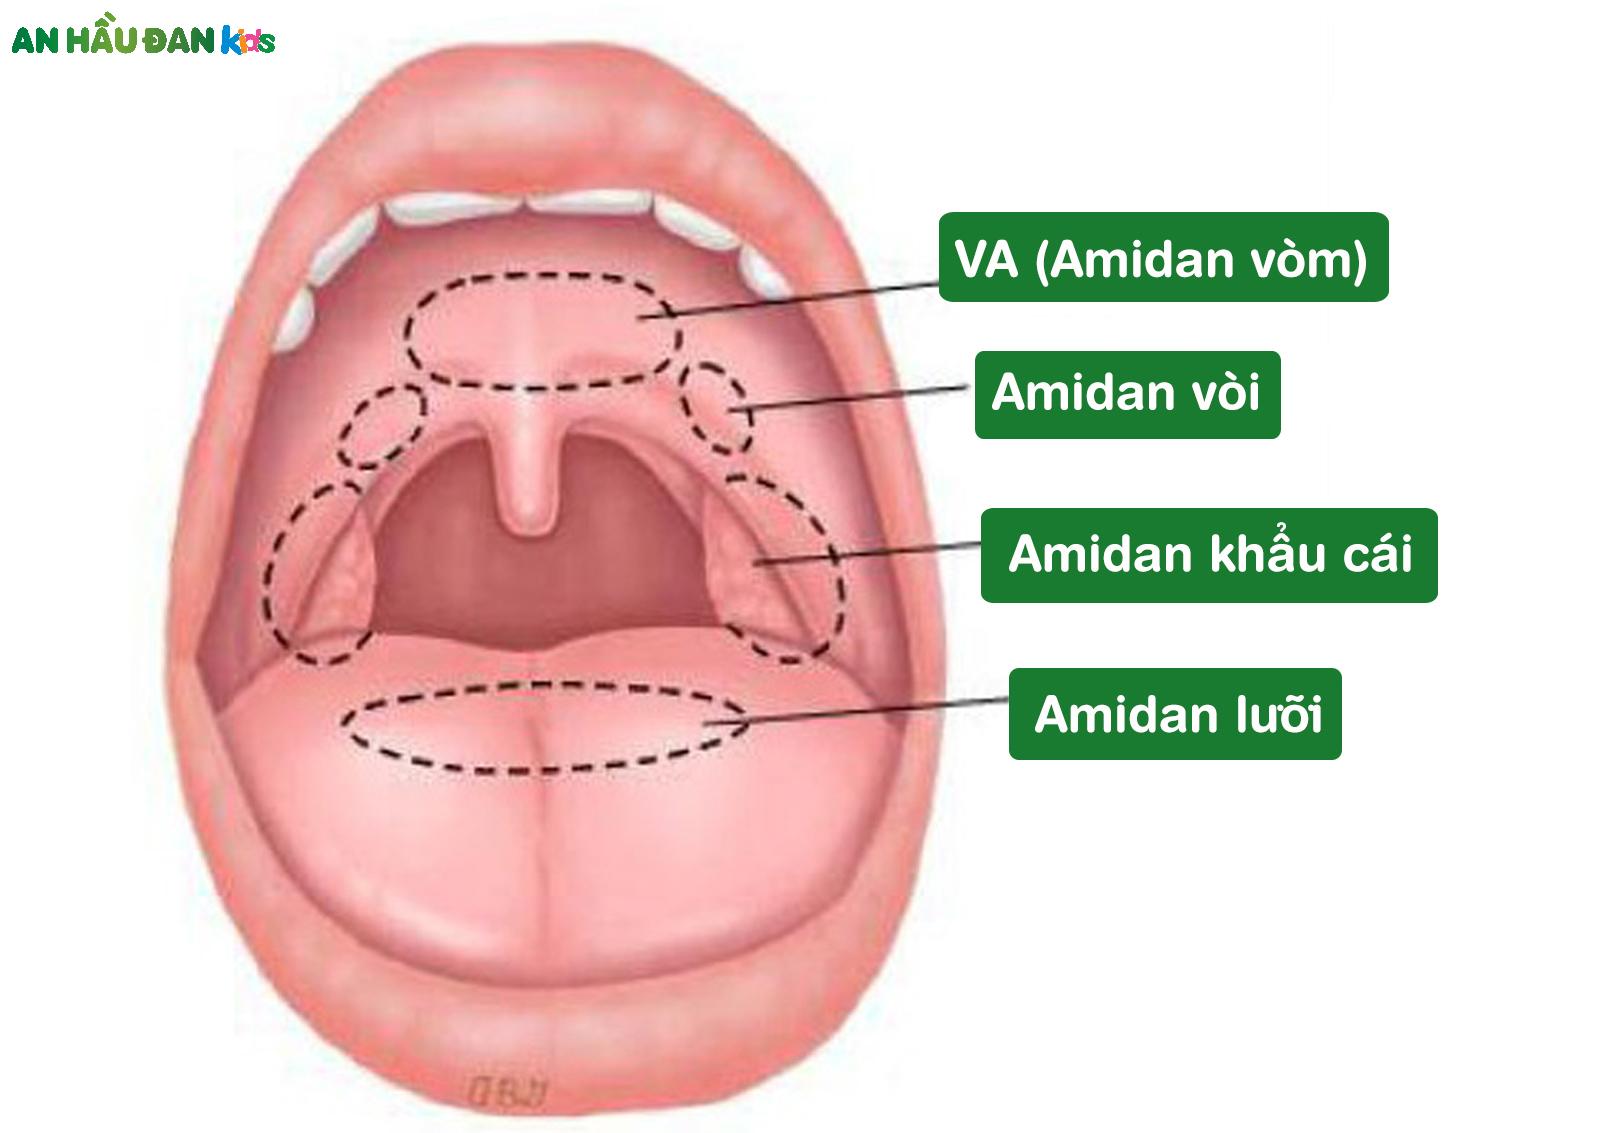 amidan, VA là tổ chức bạch huyết ở vùng hầu họng